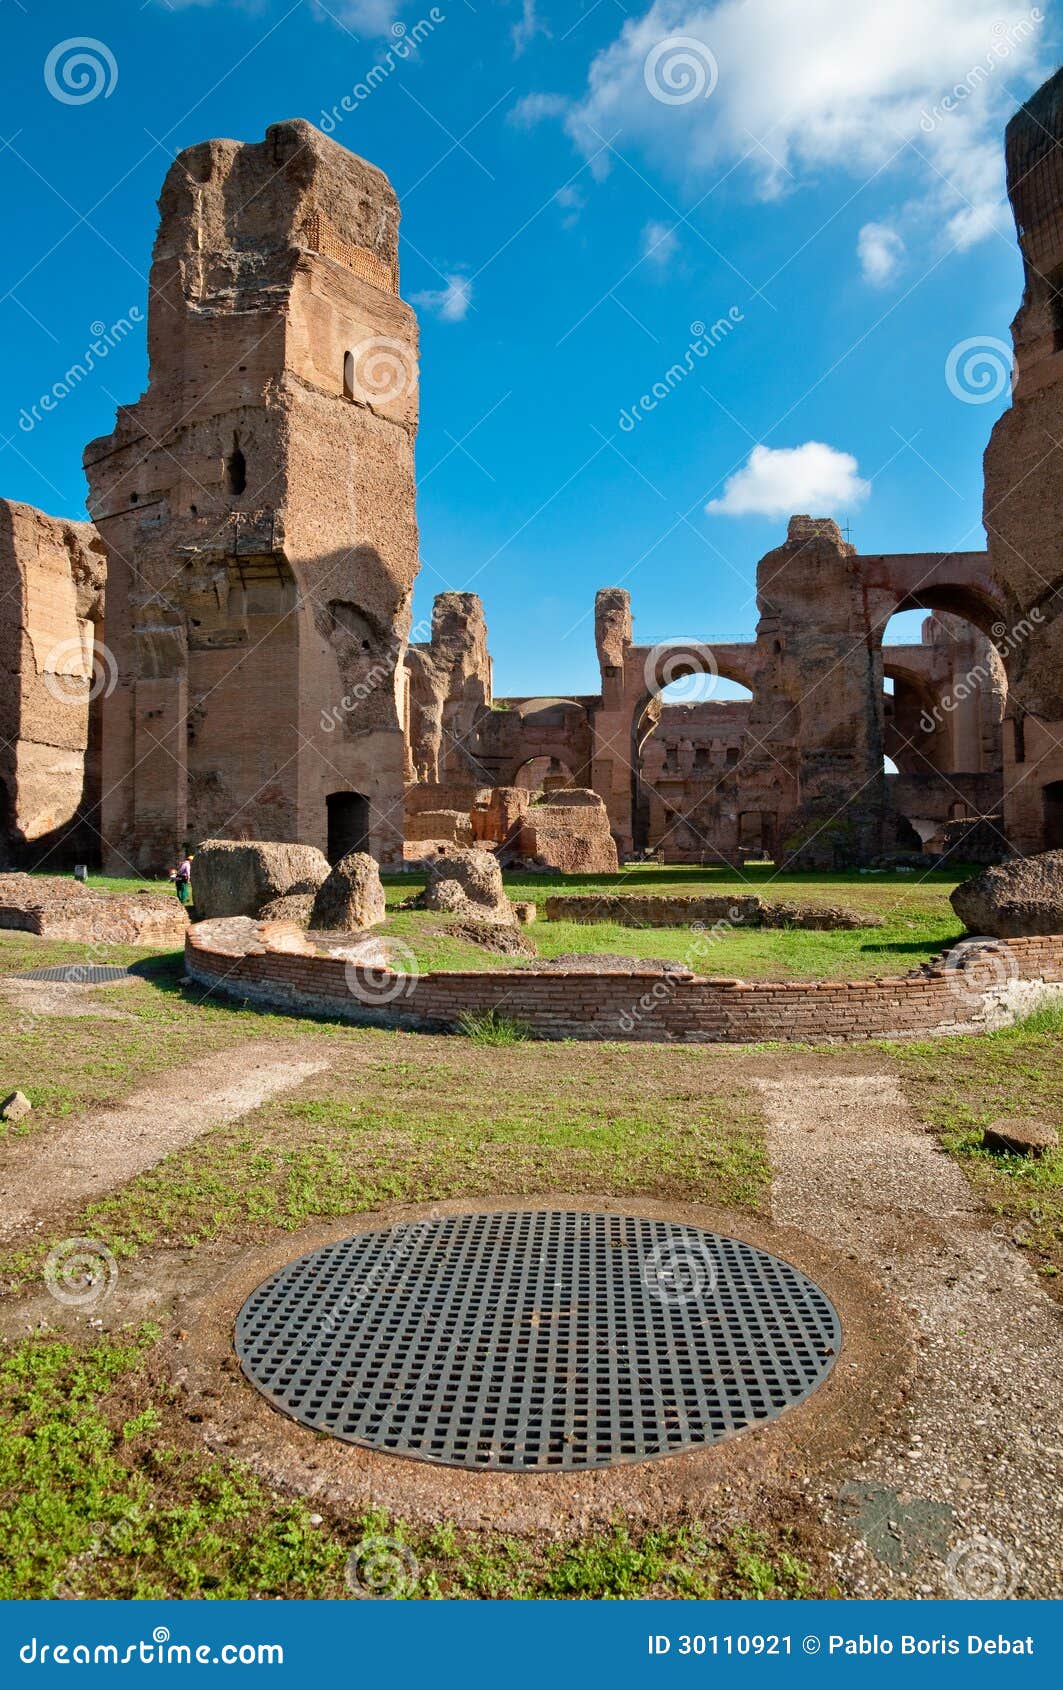 caracalla springs ruins and grating at rome